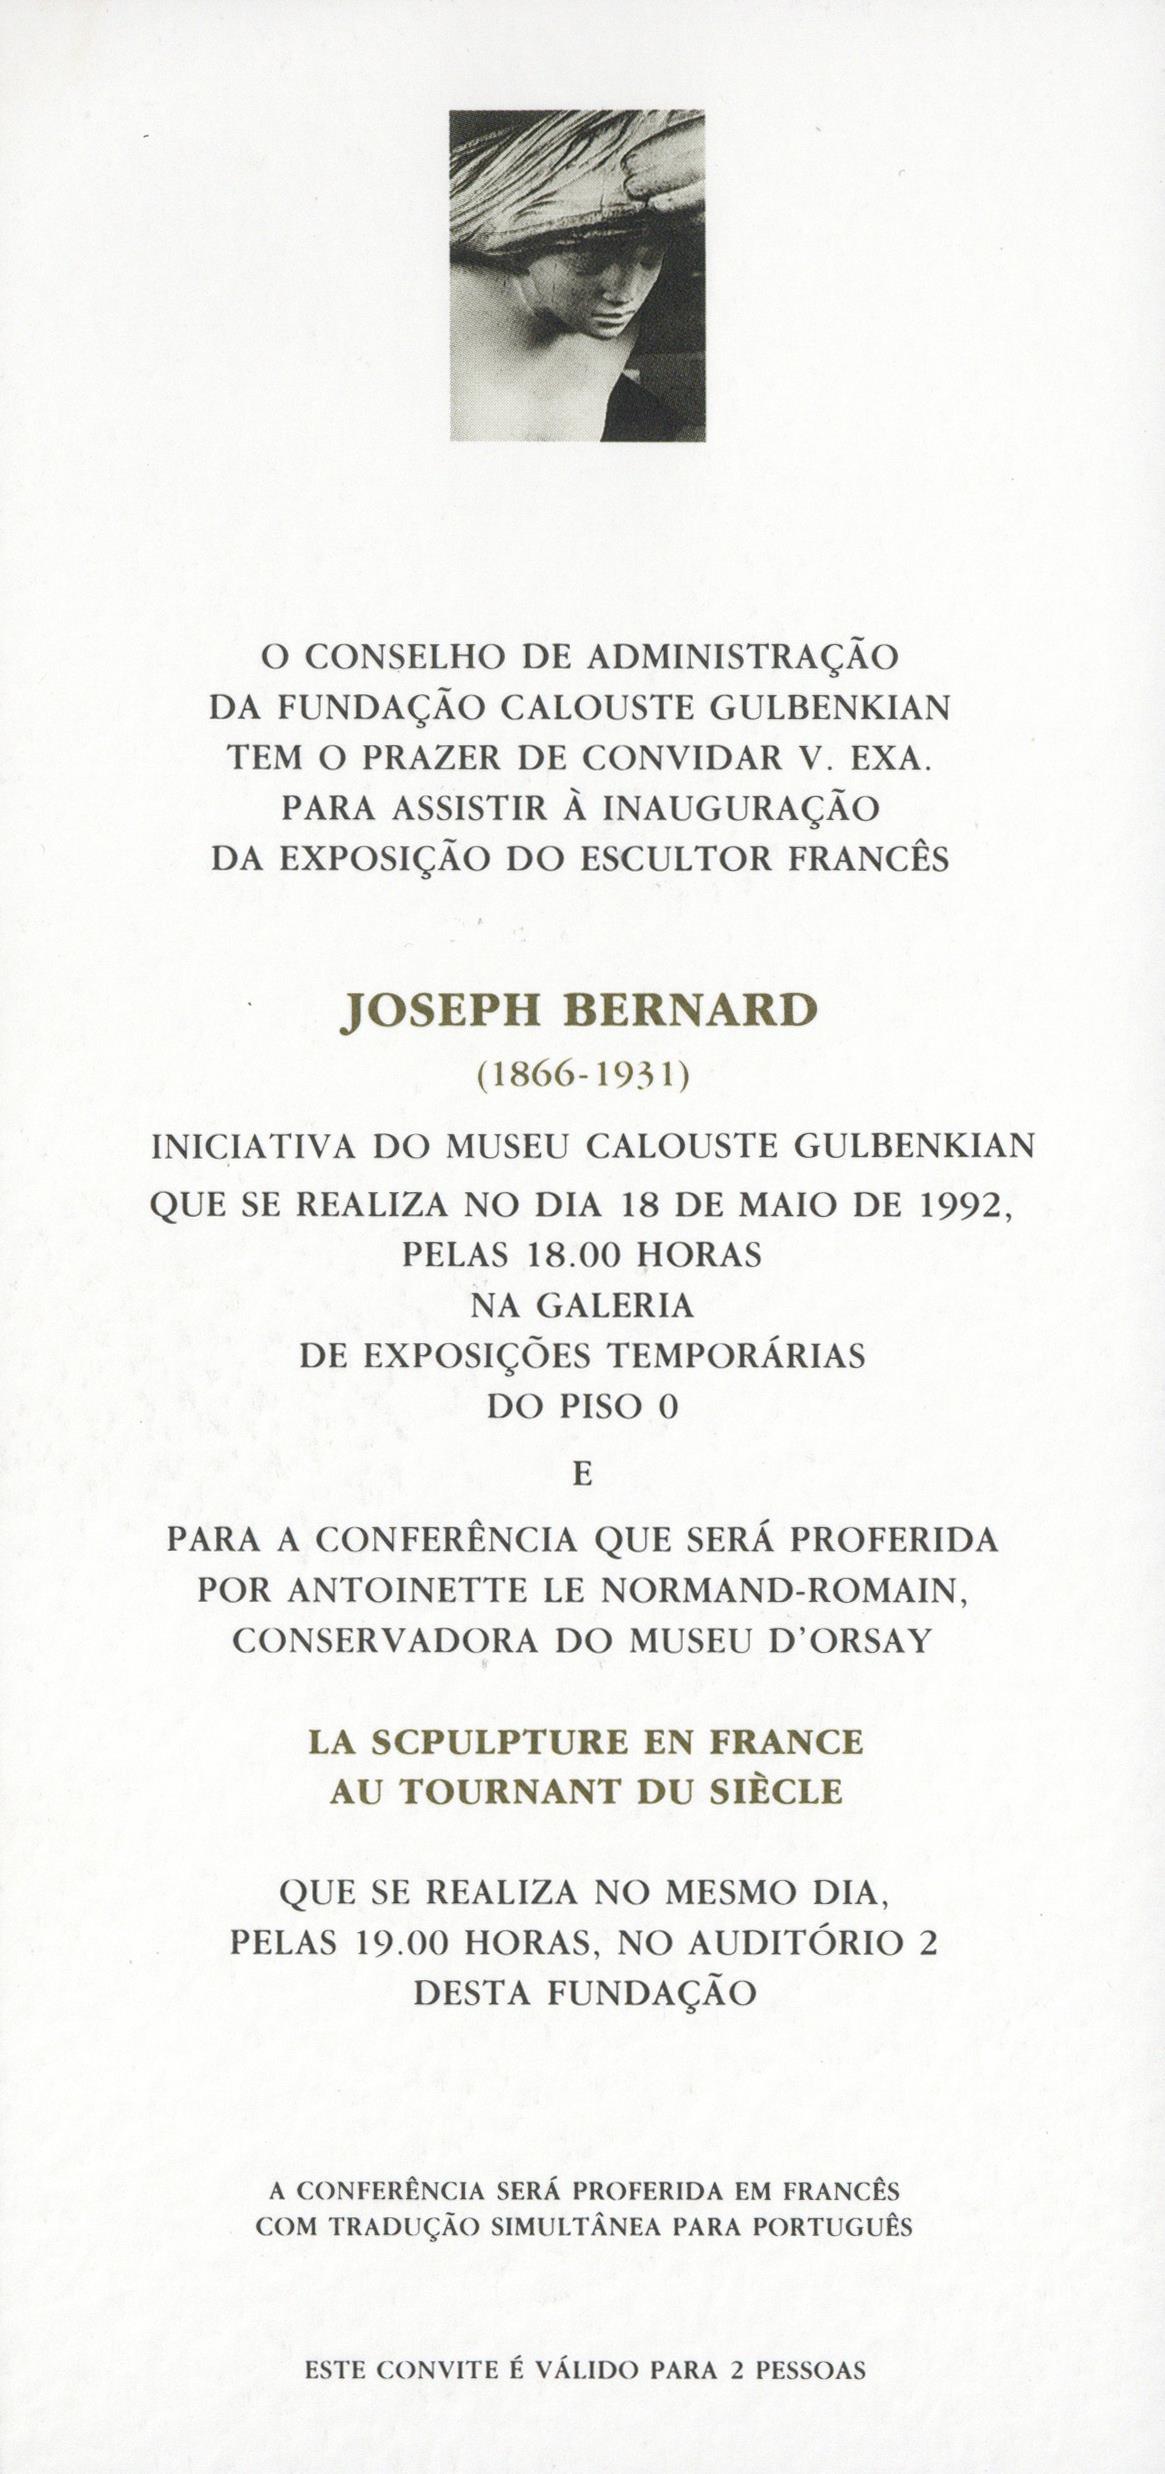 Joseph Bernard / La Sculpture en France au Tournant du Siècle [conferência por Antoinette Le Normand-Romain]